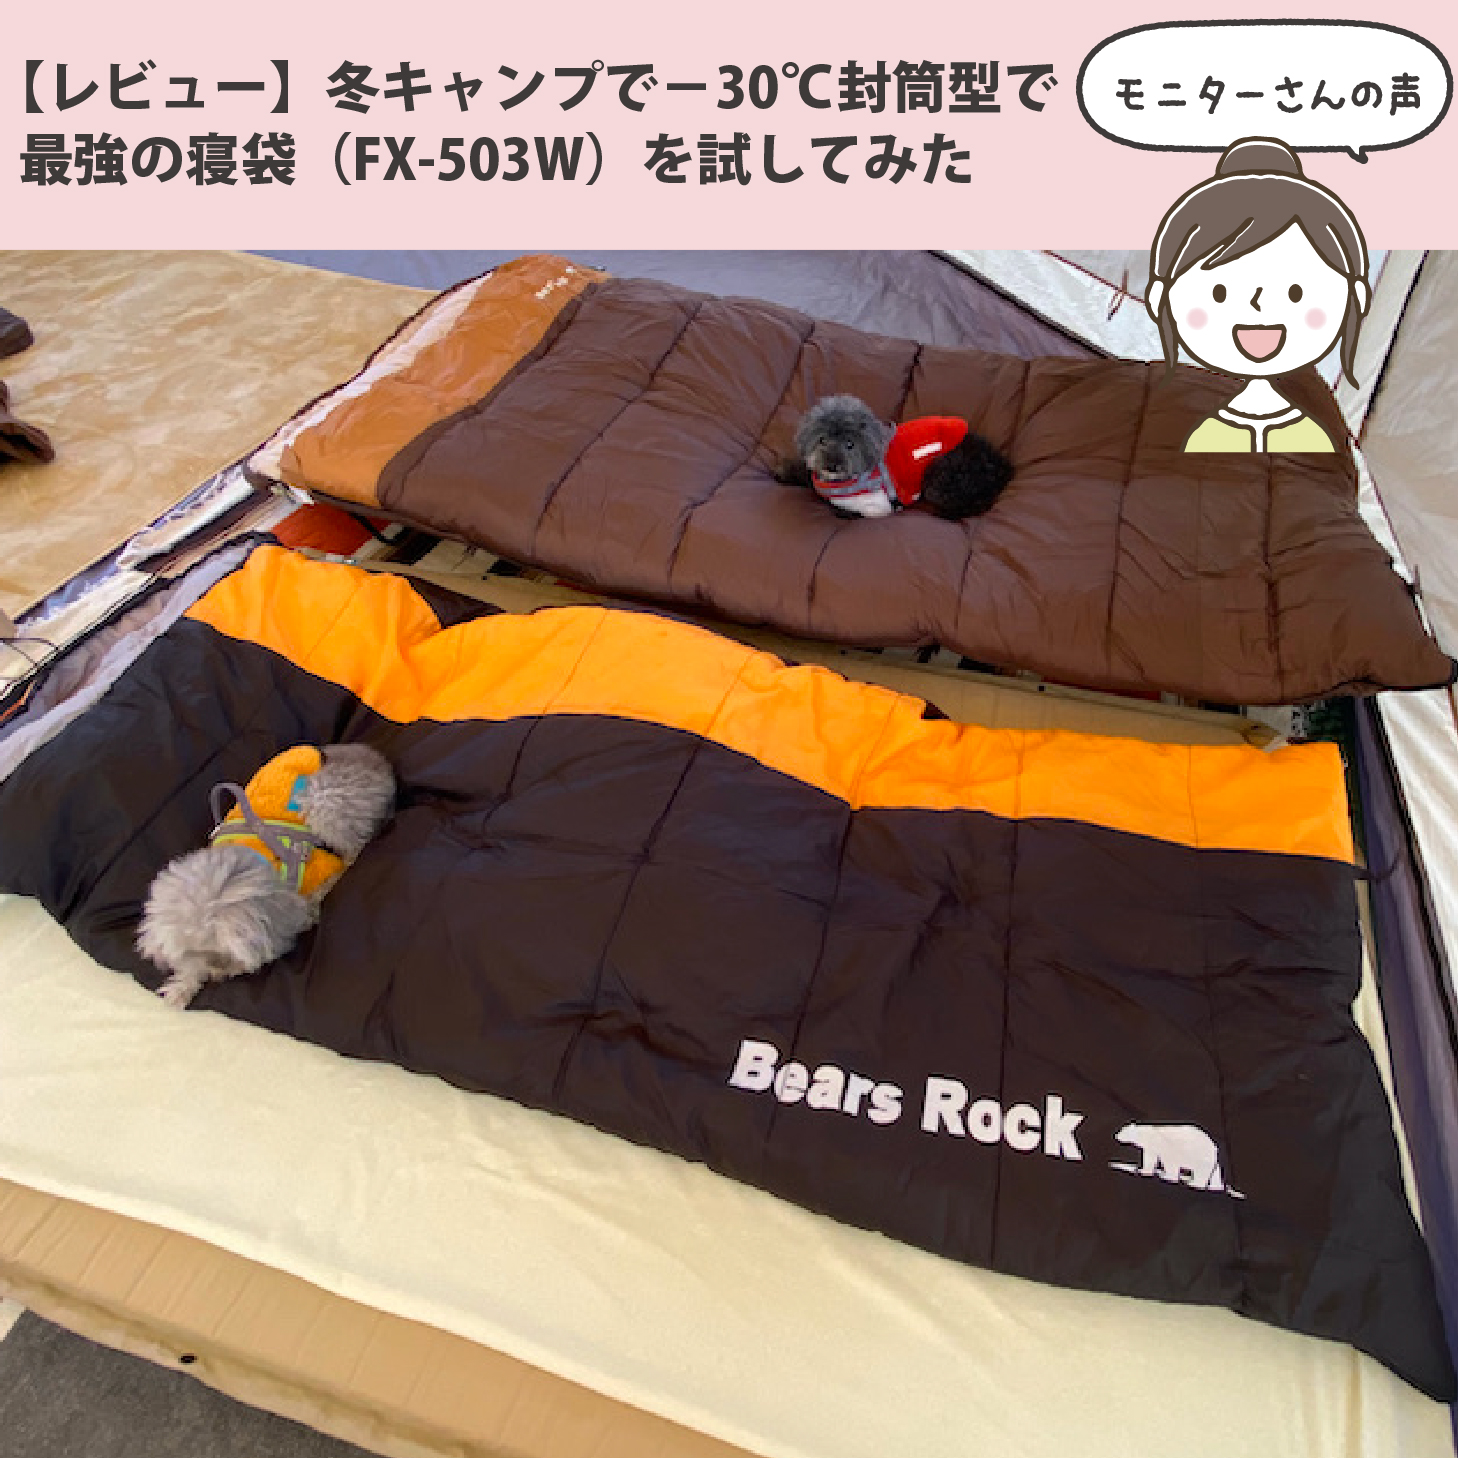 寝袋 - Bears Rock:寝袋・テントなどアウトドア用品の専門メーカー 